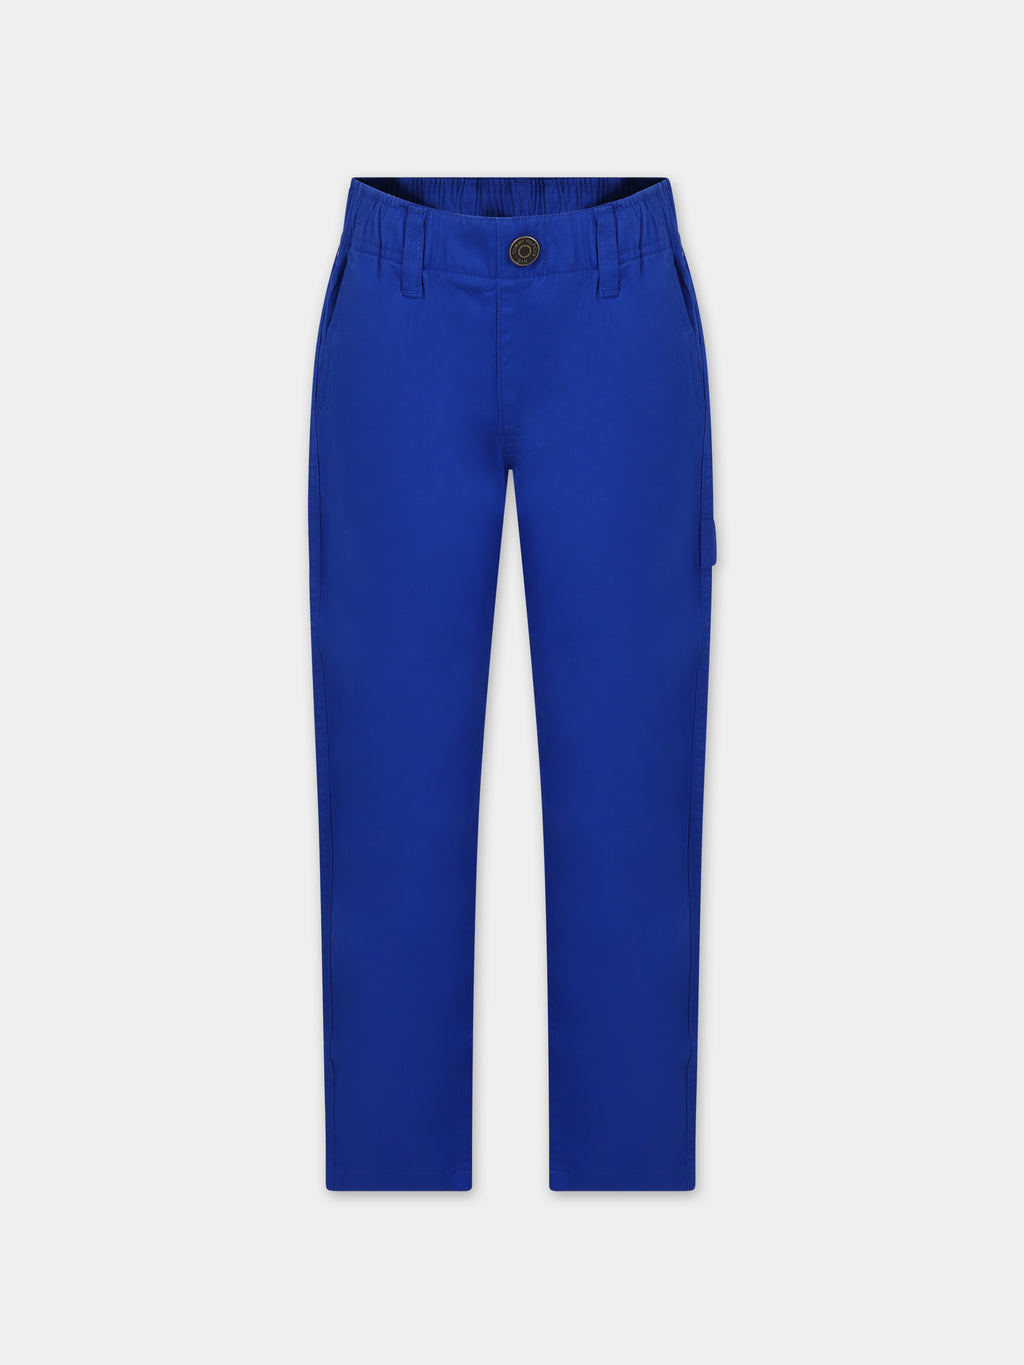 Pantalone azzurro per bambino con logo